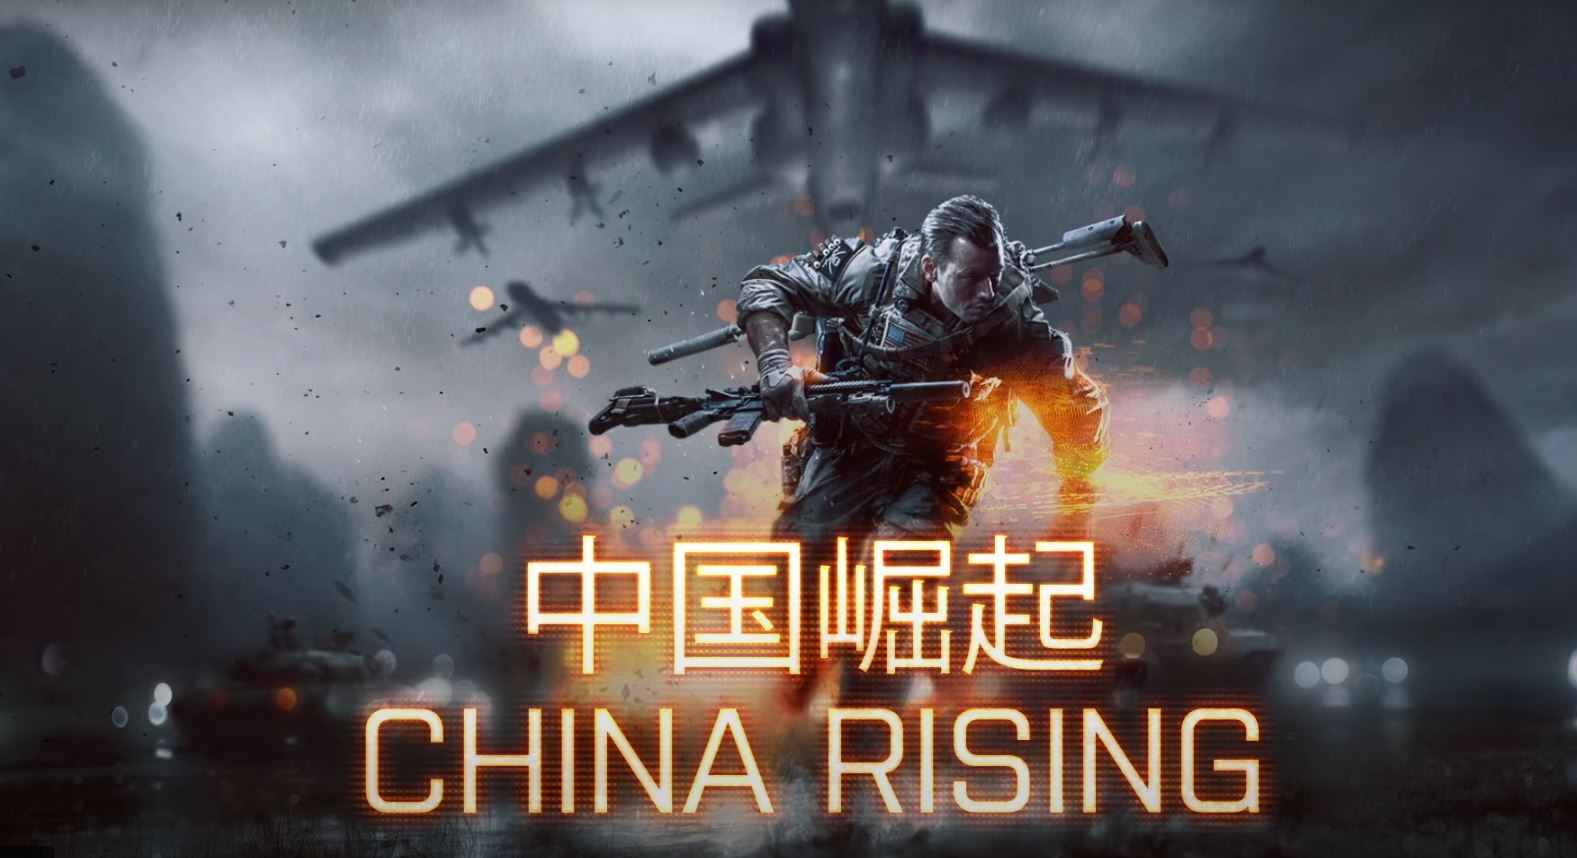 De graça! DLC China Rising do Battlefield 4 pode ser baixada por